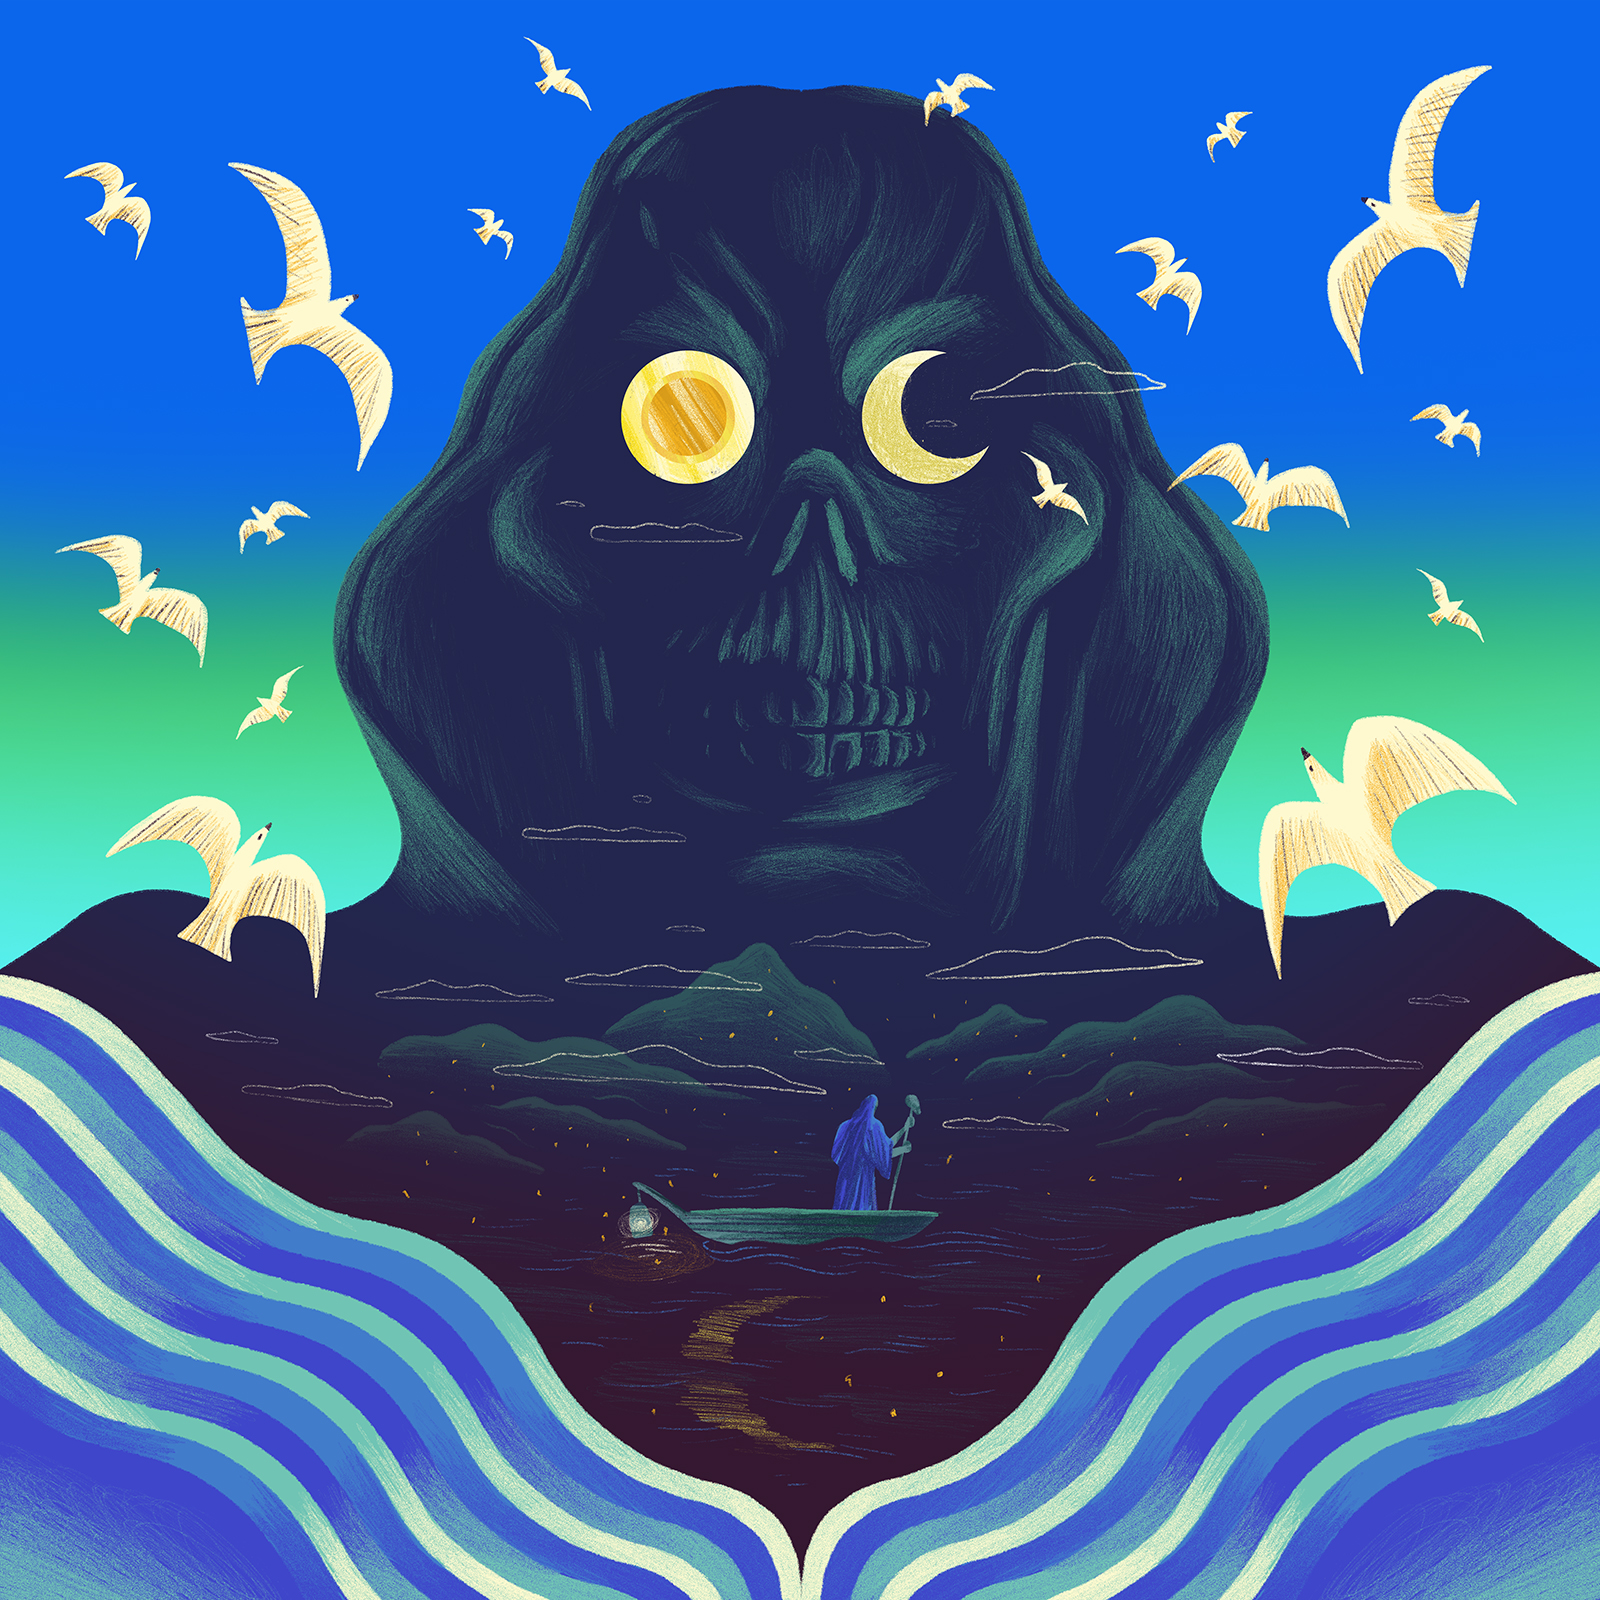 Ferryman Album cover design